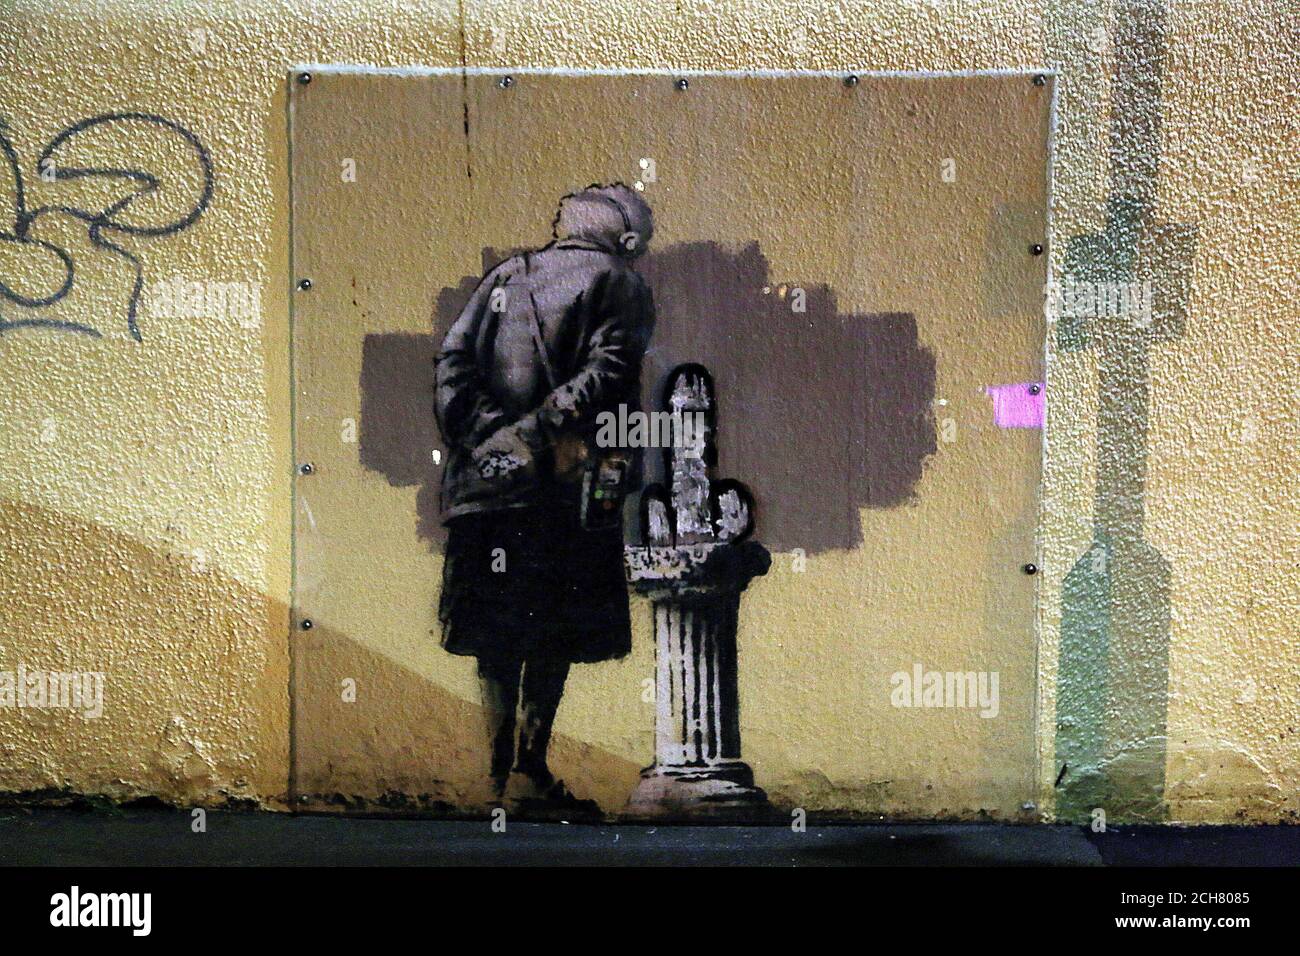 Invitación champú Hacer NOTA DE CONTENIDO un mural llamado Art Buff creado por el artista callejero  Banksy que ha sido destrozado este fin de semana en Folkestone, Kent  Fotografía de stock - Alamy